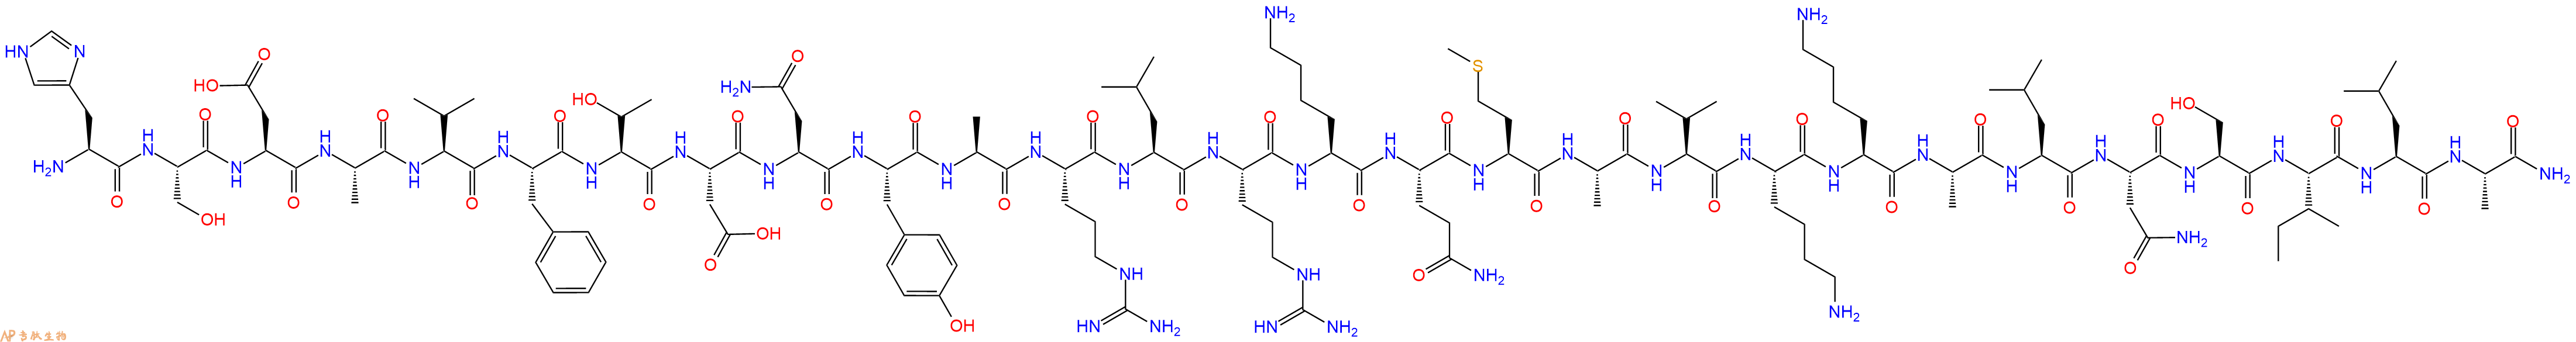 专肽生物产品激动剂多肽[Ala11,22,28]-VIP (human, bovine, porcine, ra291524-04-4